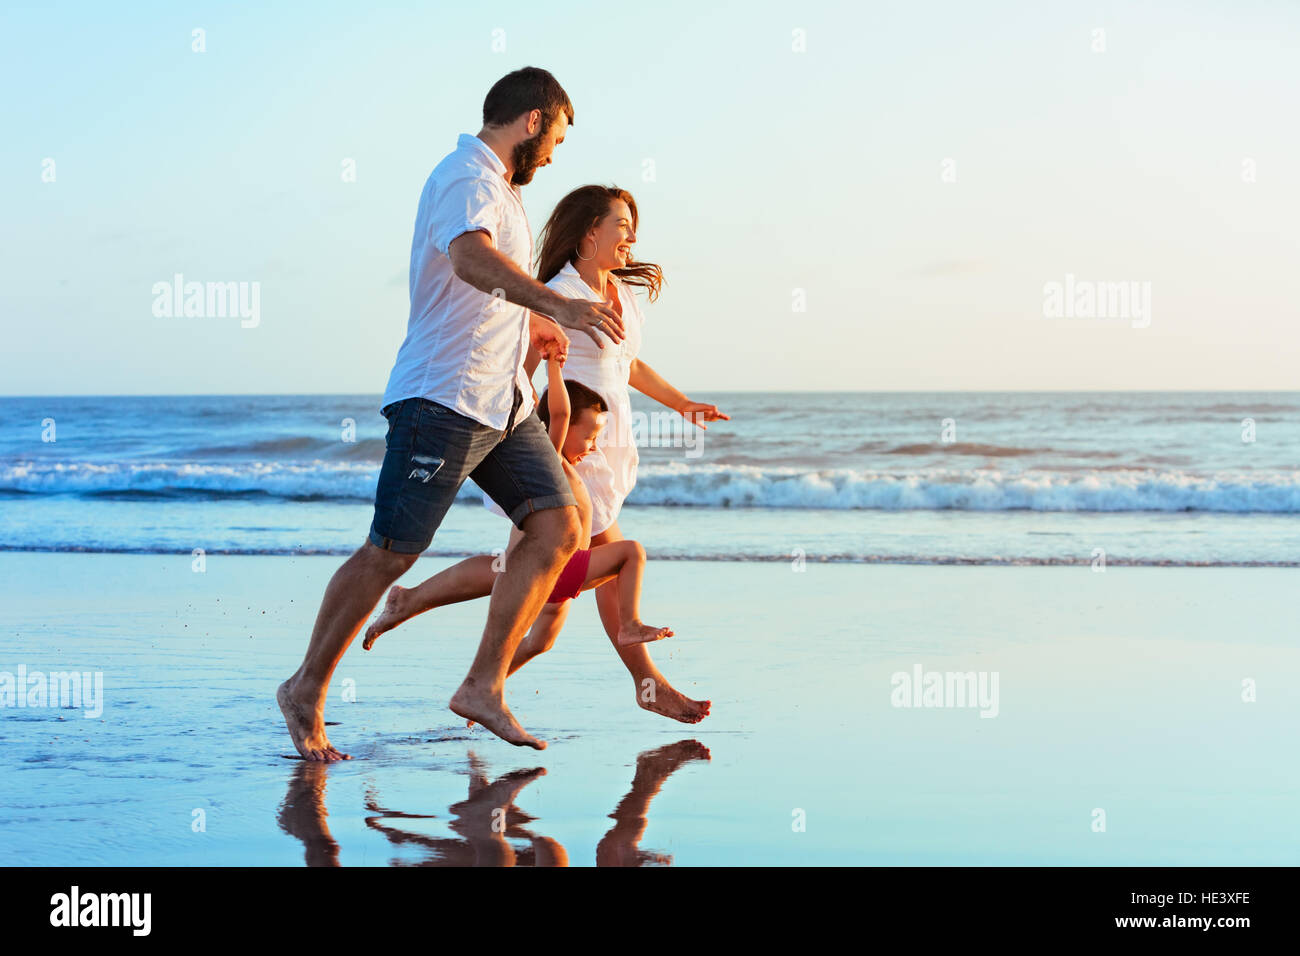 Happy Family - père, mère, fils de bébé tenir la main, exécutés en même temps par l'eau de mer le long de la piscine Sunset surf sur la plage de sable noir Banque D'Images